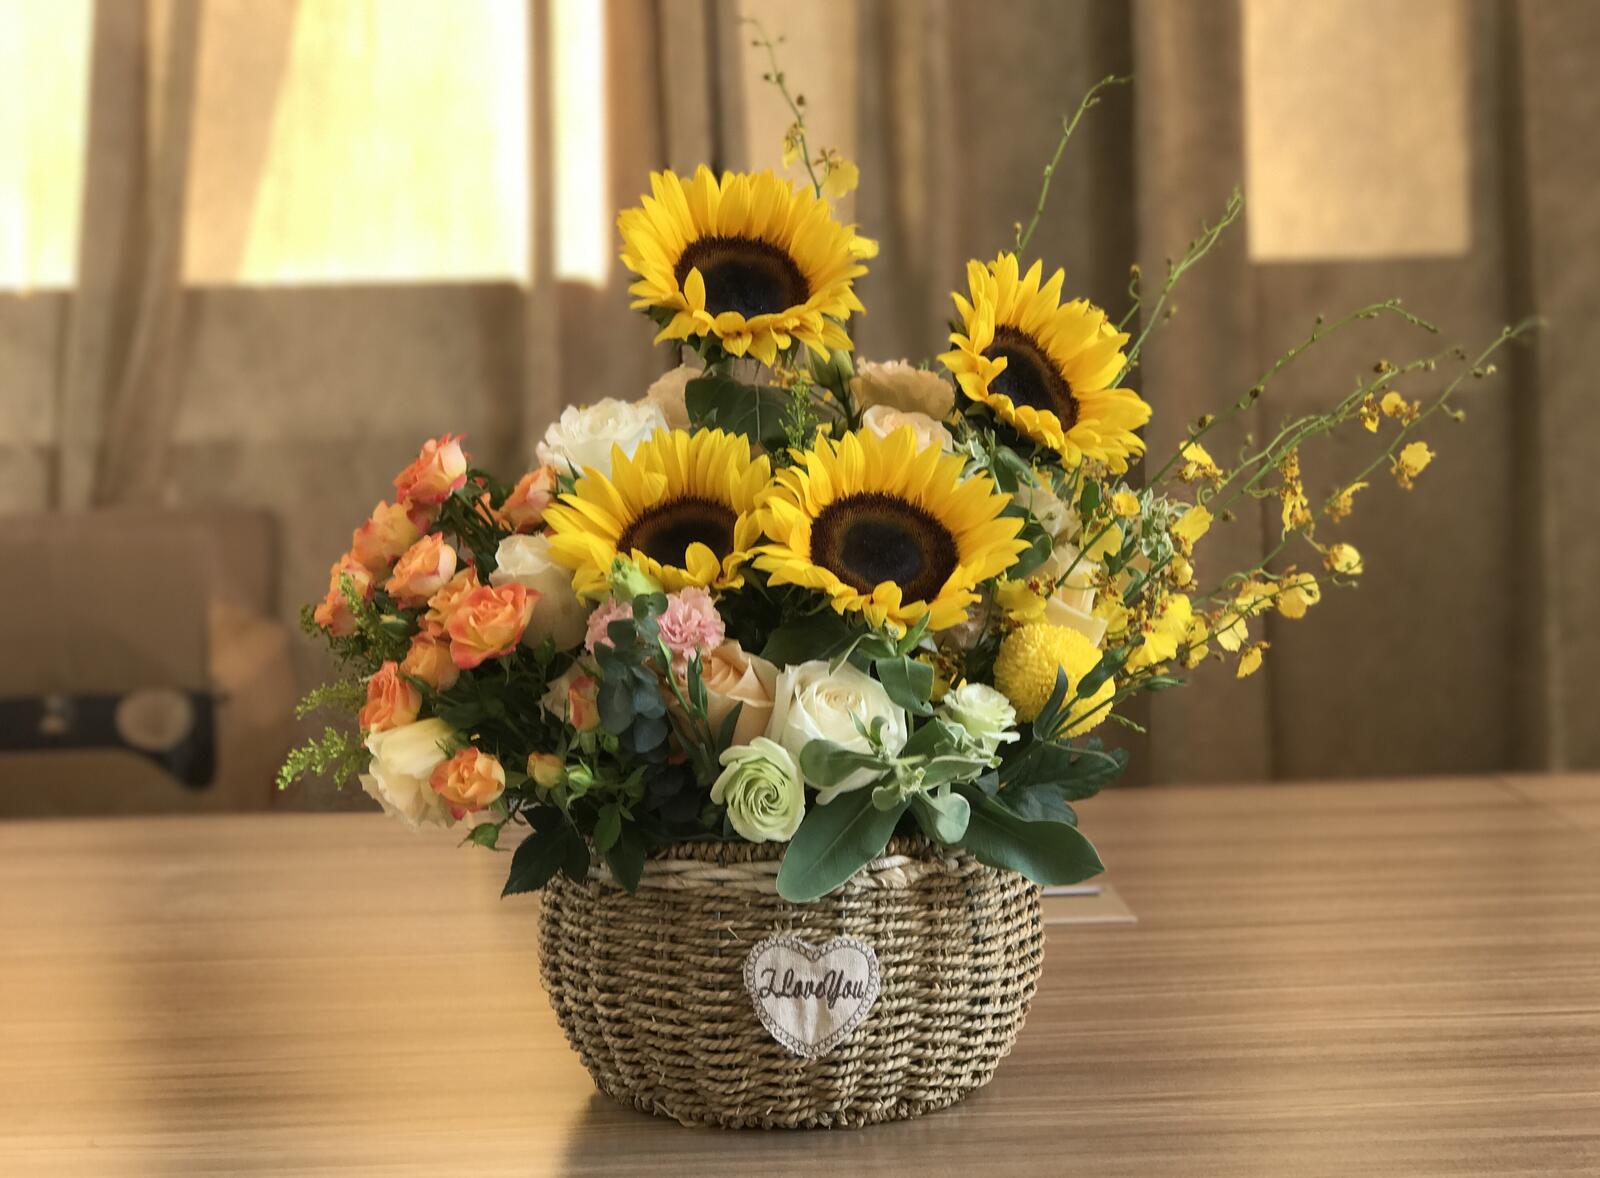 桌面上的壁纸瓶 向日葵 花束